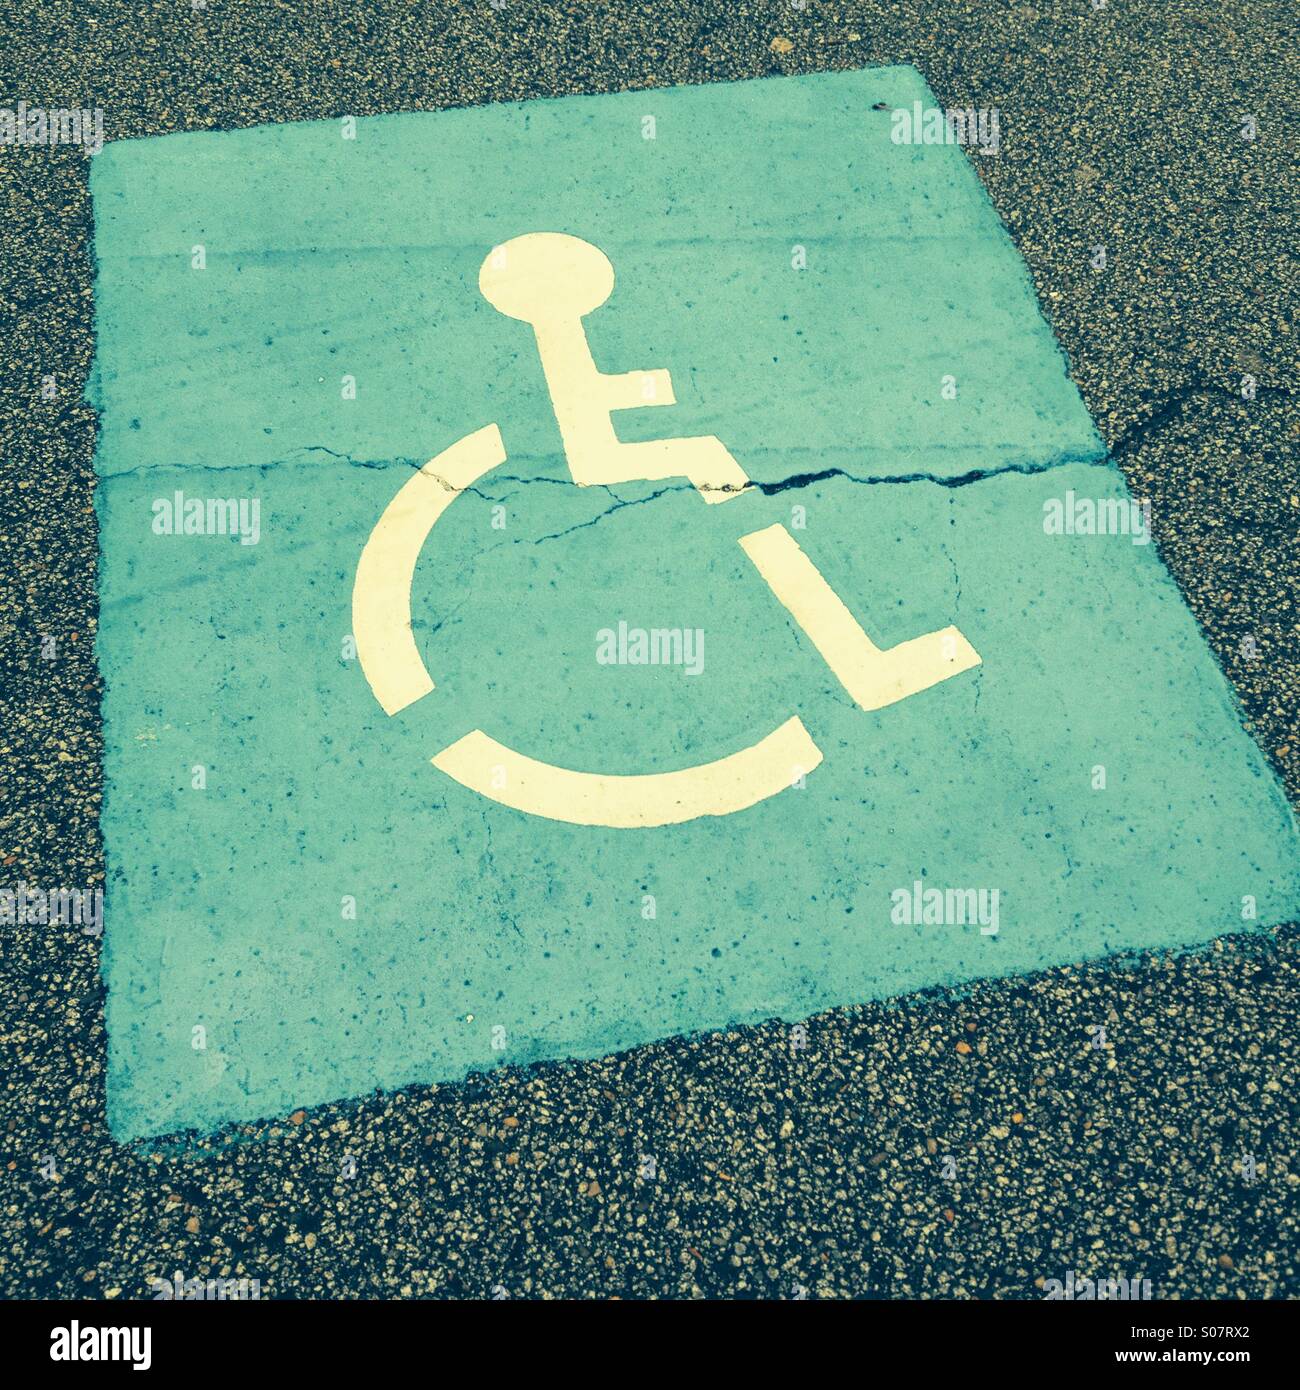 Les places de stationnement pour personnes handicapées Banque D'Images